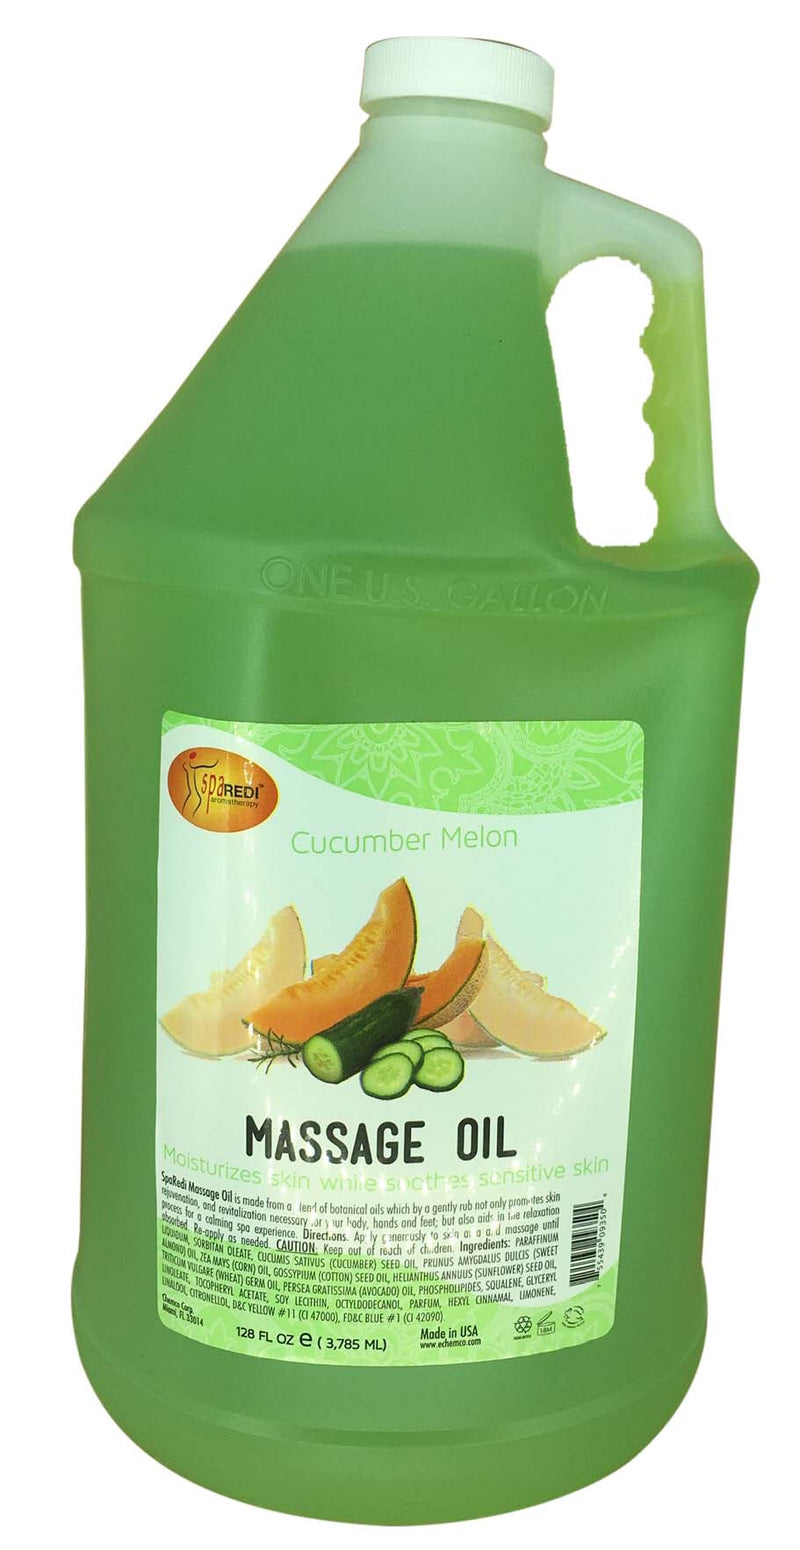 Chemco Pro Nail Massage Oil - Cucumber Melon